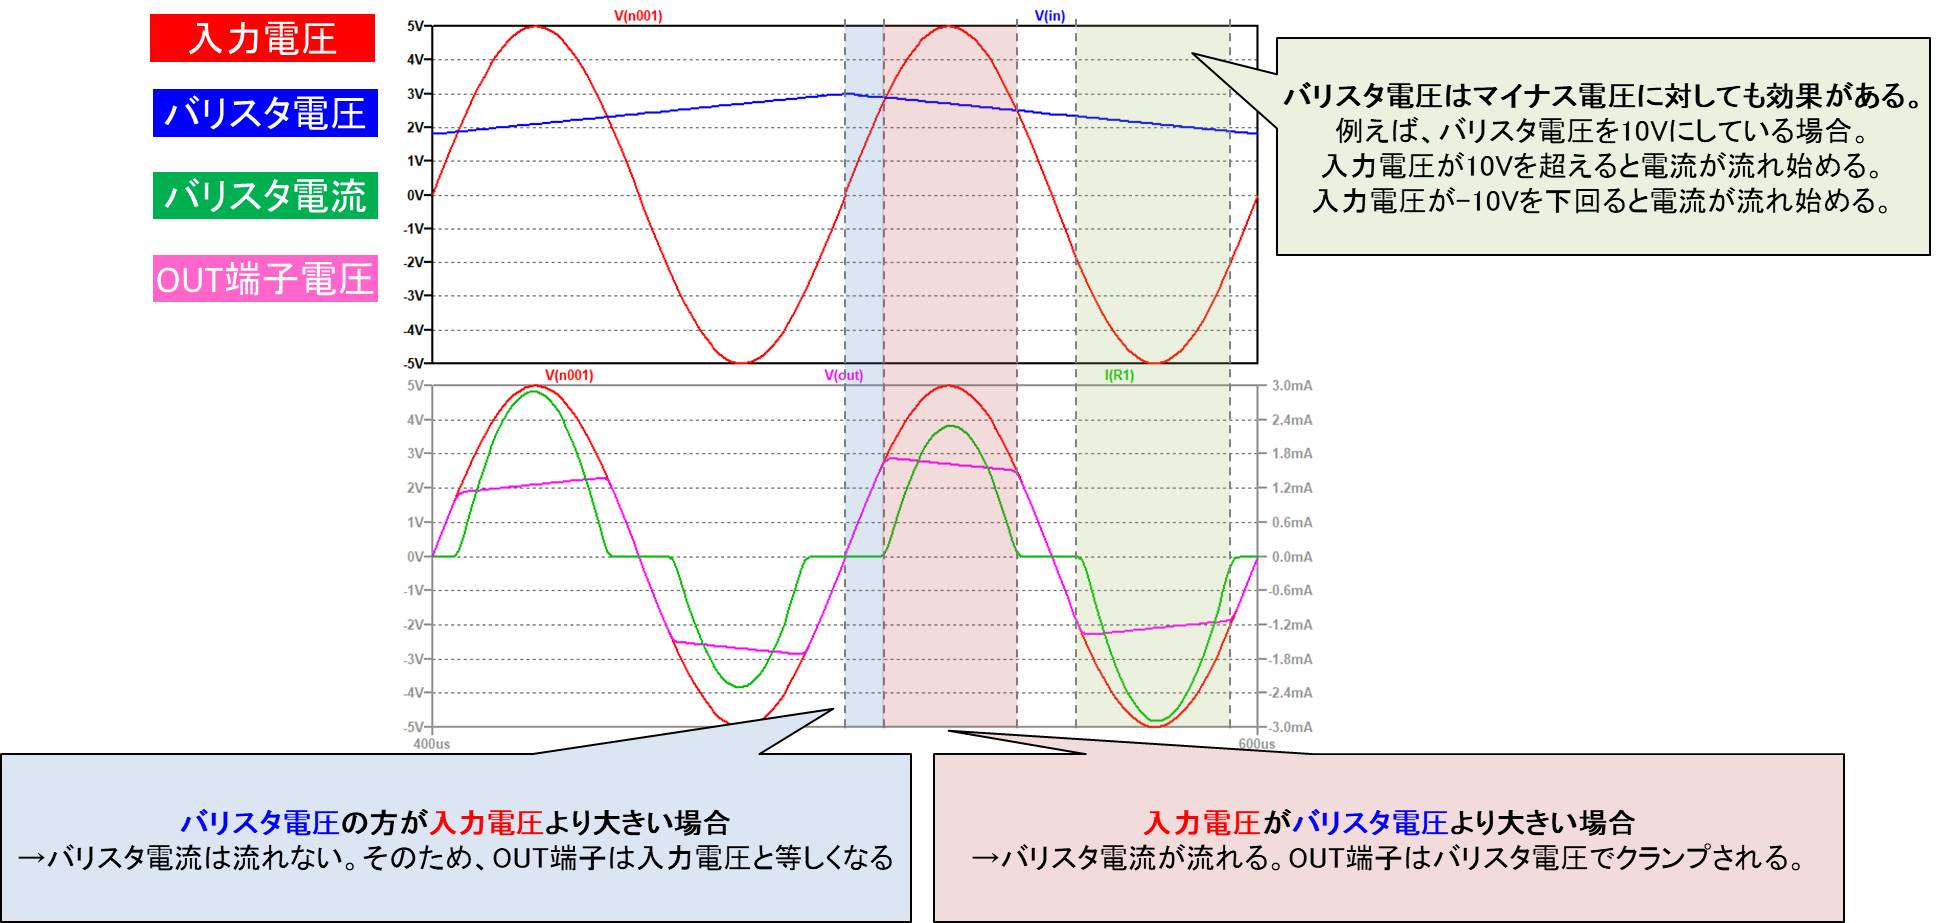 【LTspice】バリスタのサンプル回路図のシミュレーション02